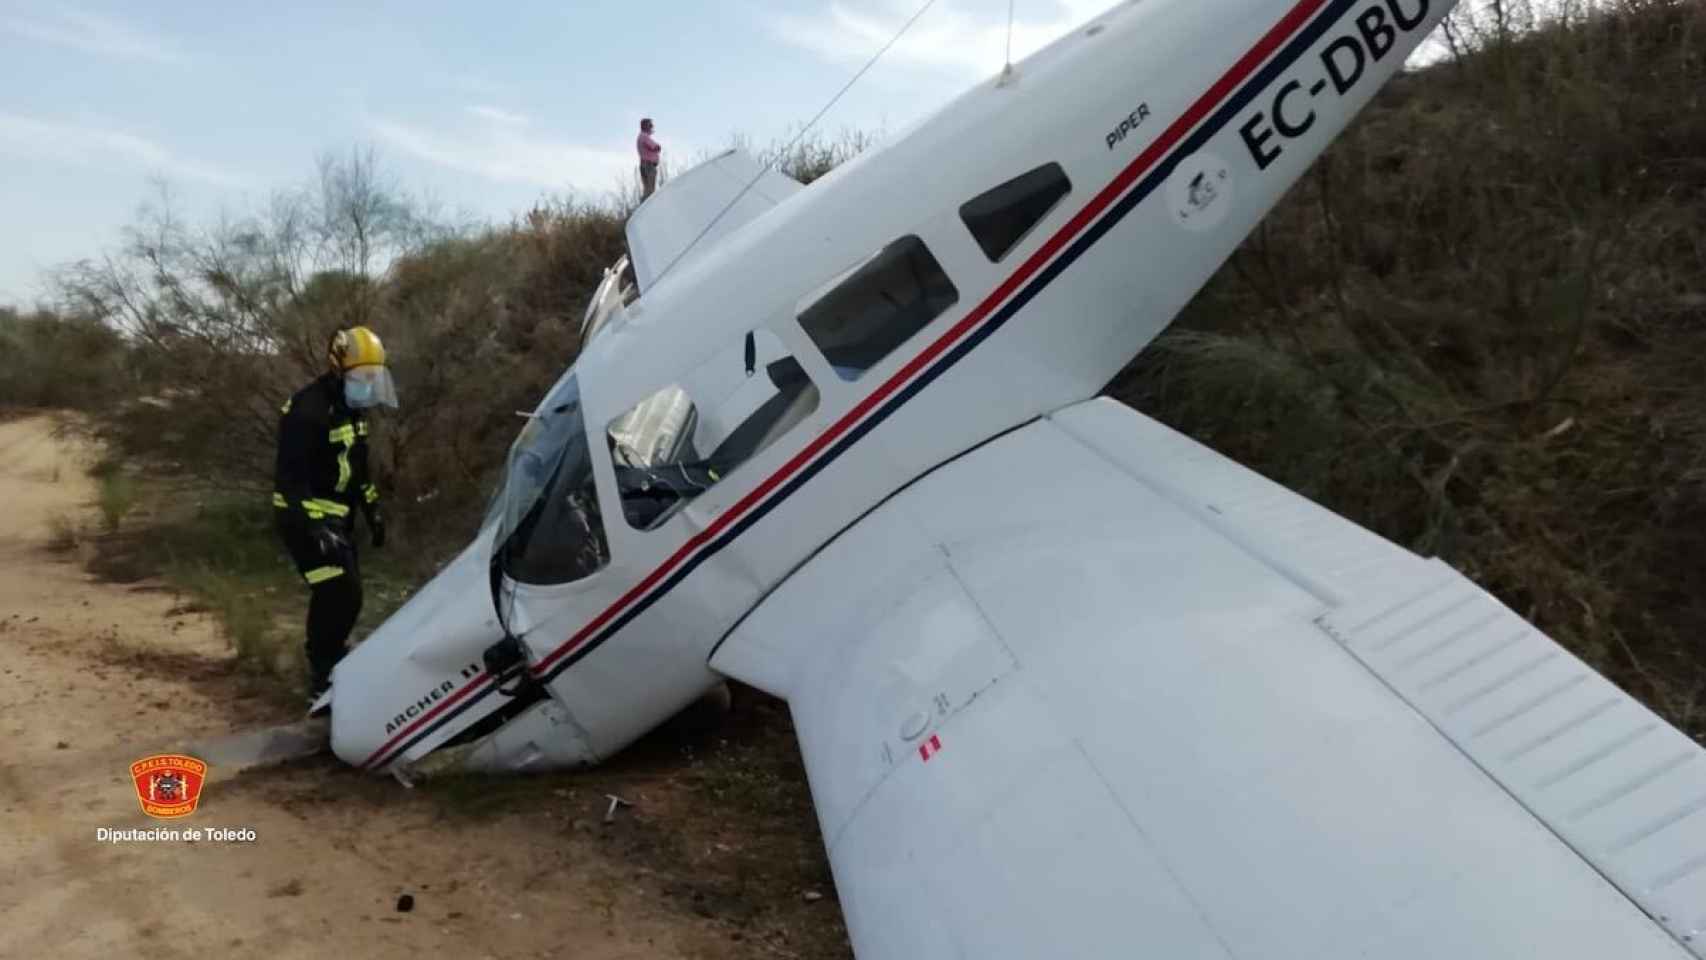 La avioneta accidentada este jueves en Casarrubios. Fotos: CPEIS Toledo.